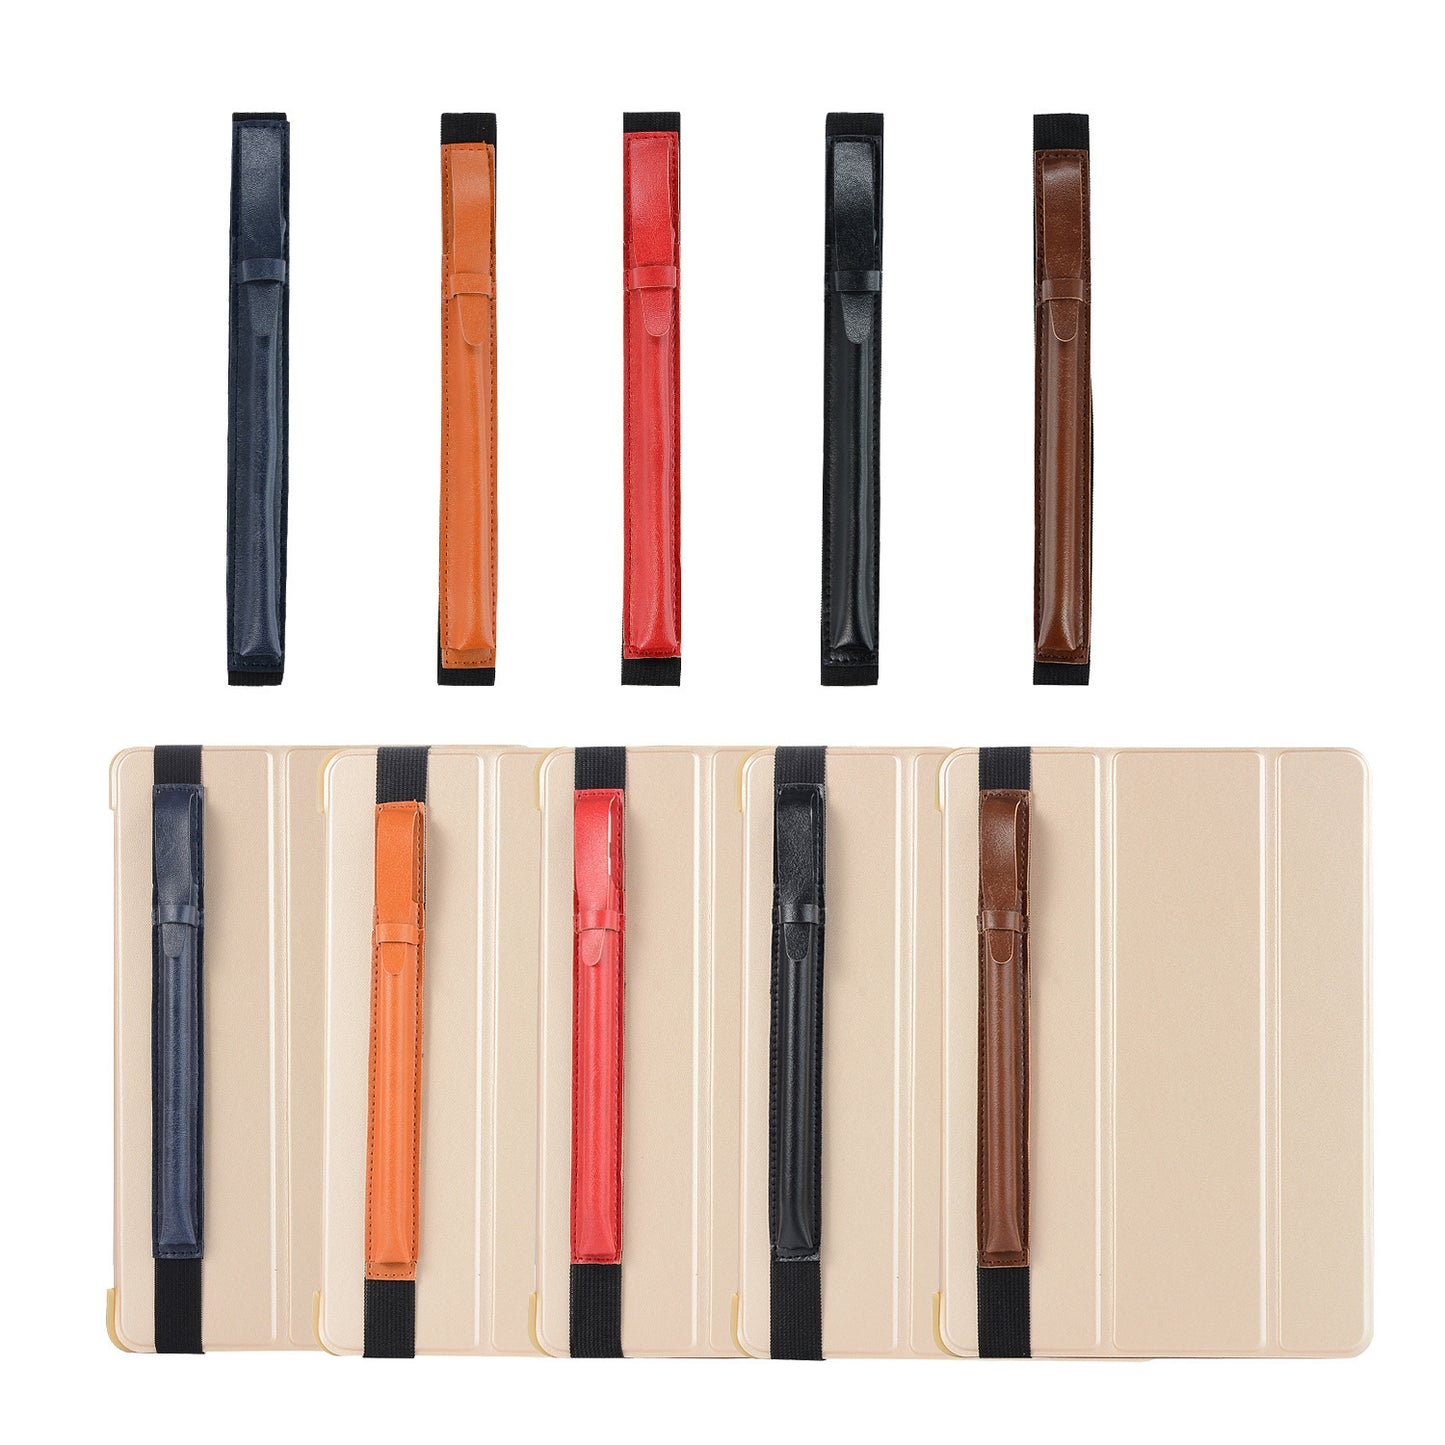 Leather case for Maramalive™ Capacitive Pen Pen Drawing Pen Set ipad air 2 ipad mini 3 ipad mini 4 ipad mini 5 ipad mini 6 i.